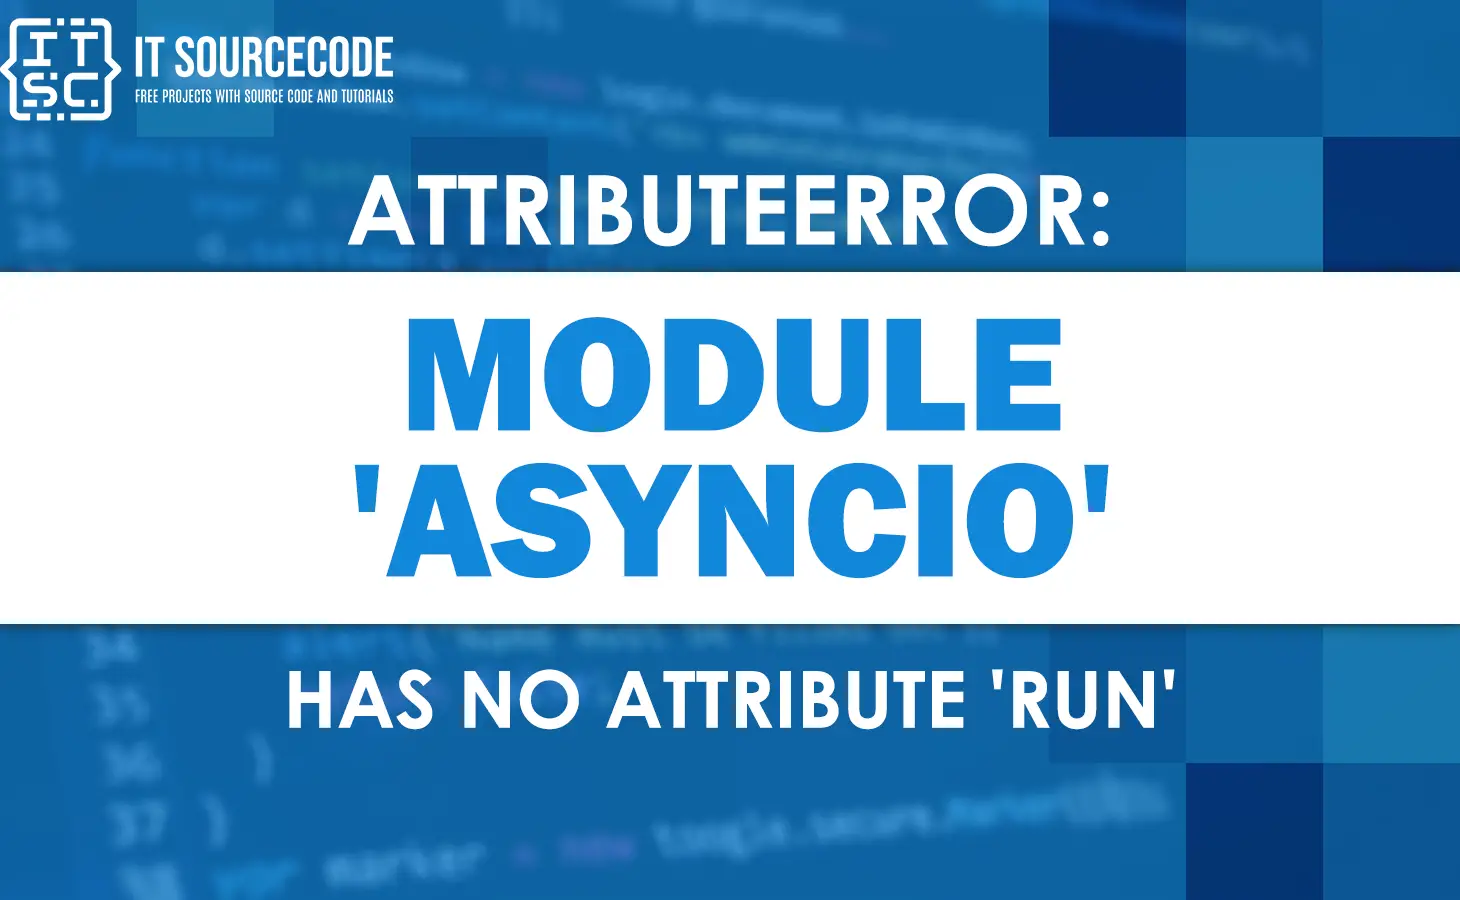 Attributeerror: module asyncio has no attribute run [SOLVED]